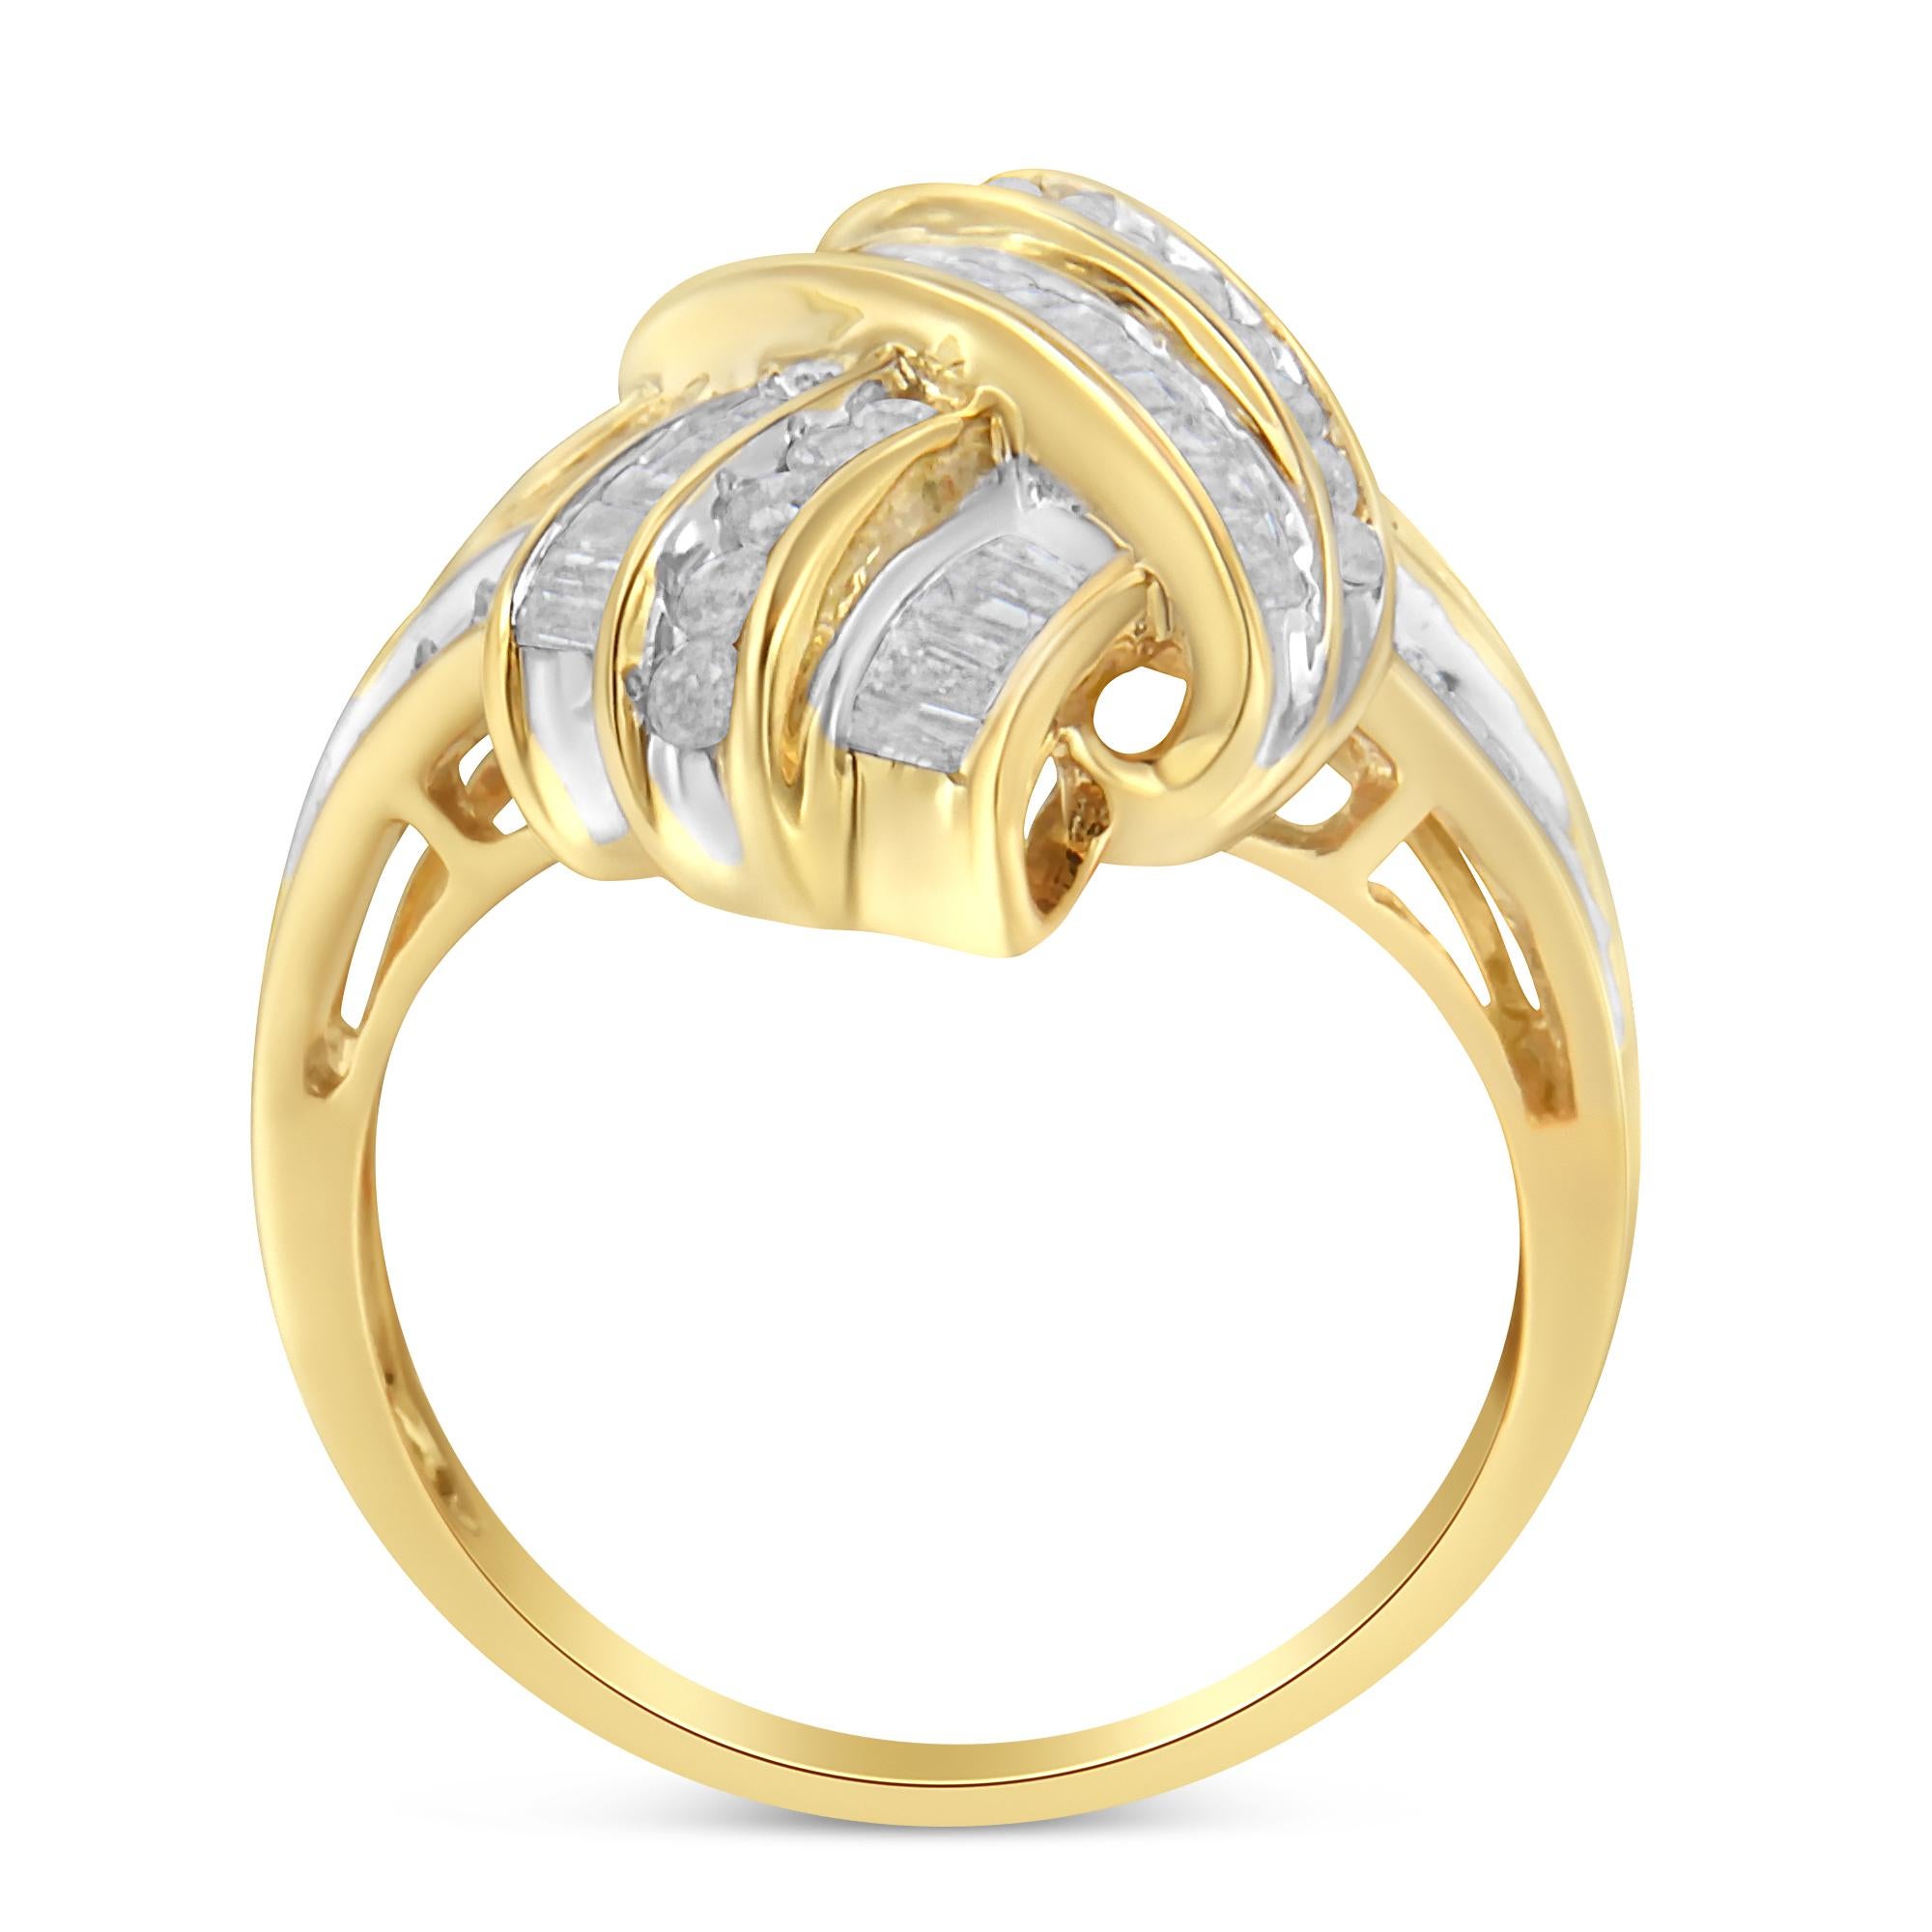 Ajoutez une touche de glamour à votre tenue avec cette fabuleuse bague en diamant. Créée avec de l'or jaune 10k de la plus haute qualité, cette pièce est ornée de 25 diamants ronds et de 50 diamants baguettes en serti clos. Le poids total des